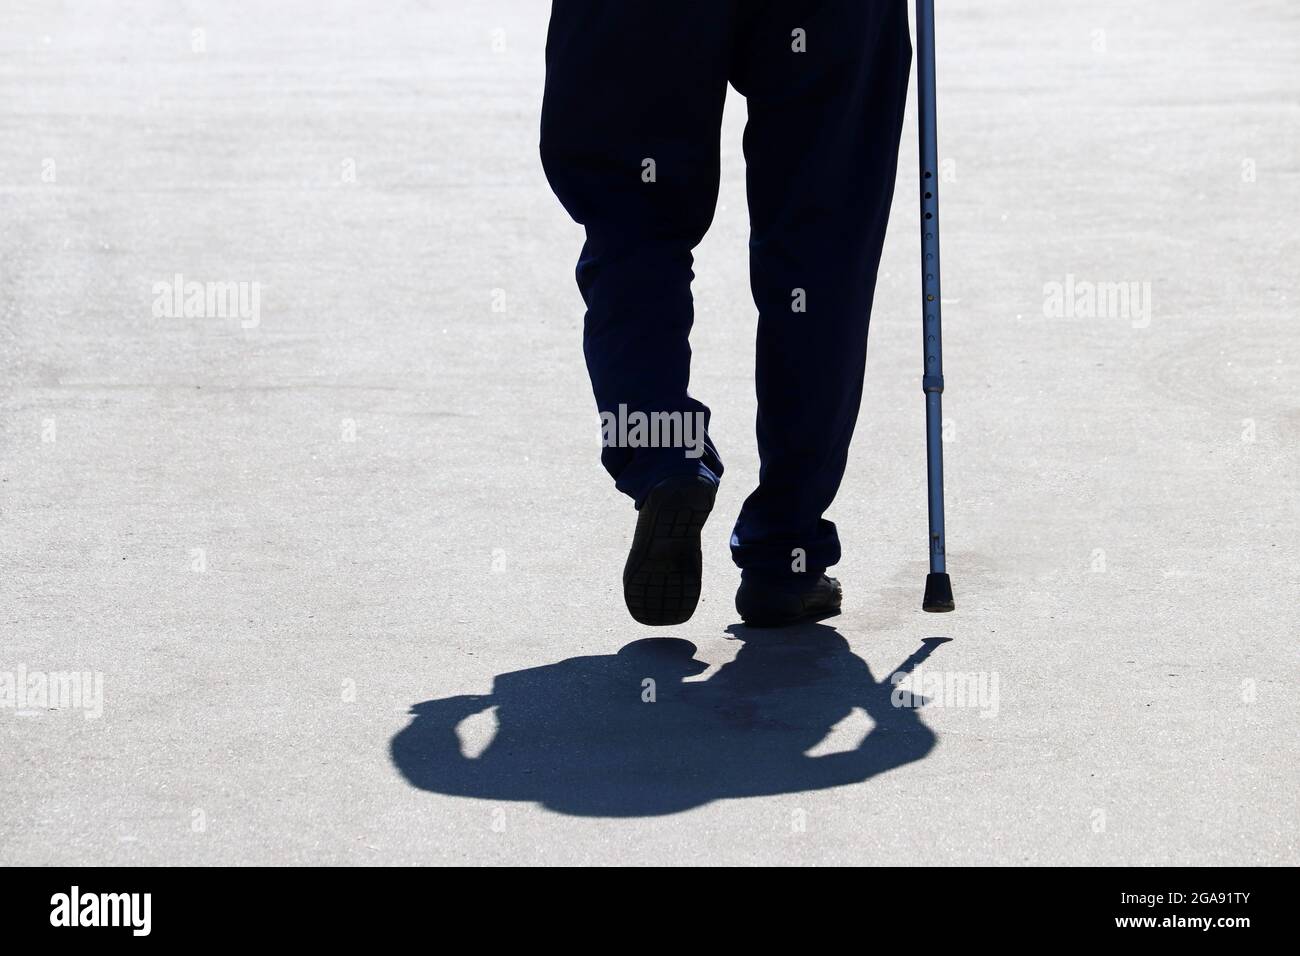 Silhouette eines Mannes, der mit einem Stock die Straße hinunter läuft, Schatten auf Asphalt. Konzept des Alters, Erkrankungen der Wirbelsäule oder Gelenkerkrankungen, ältere Menschen Stockfoto